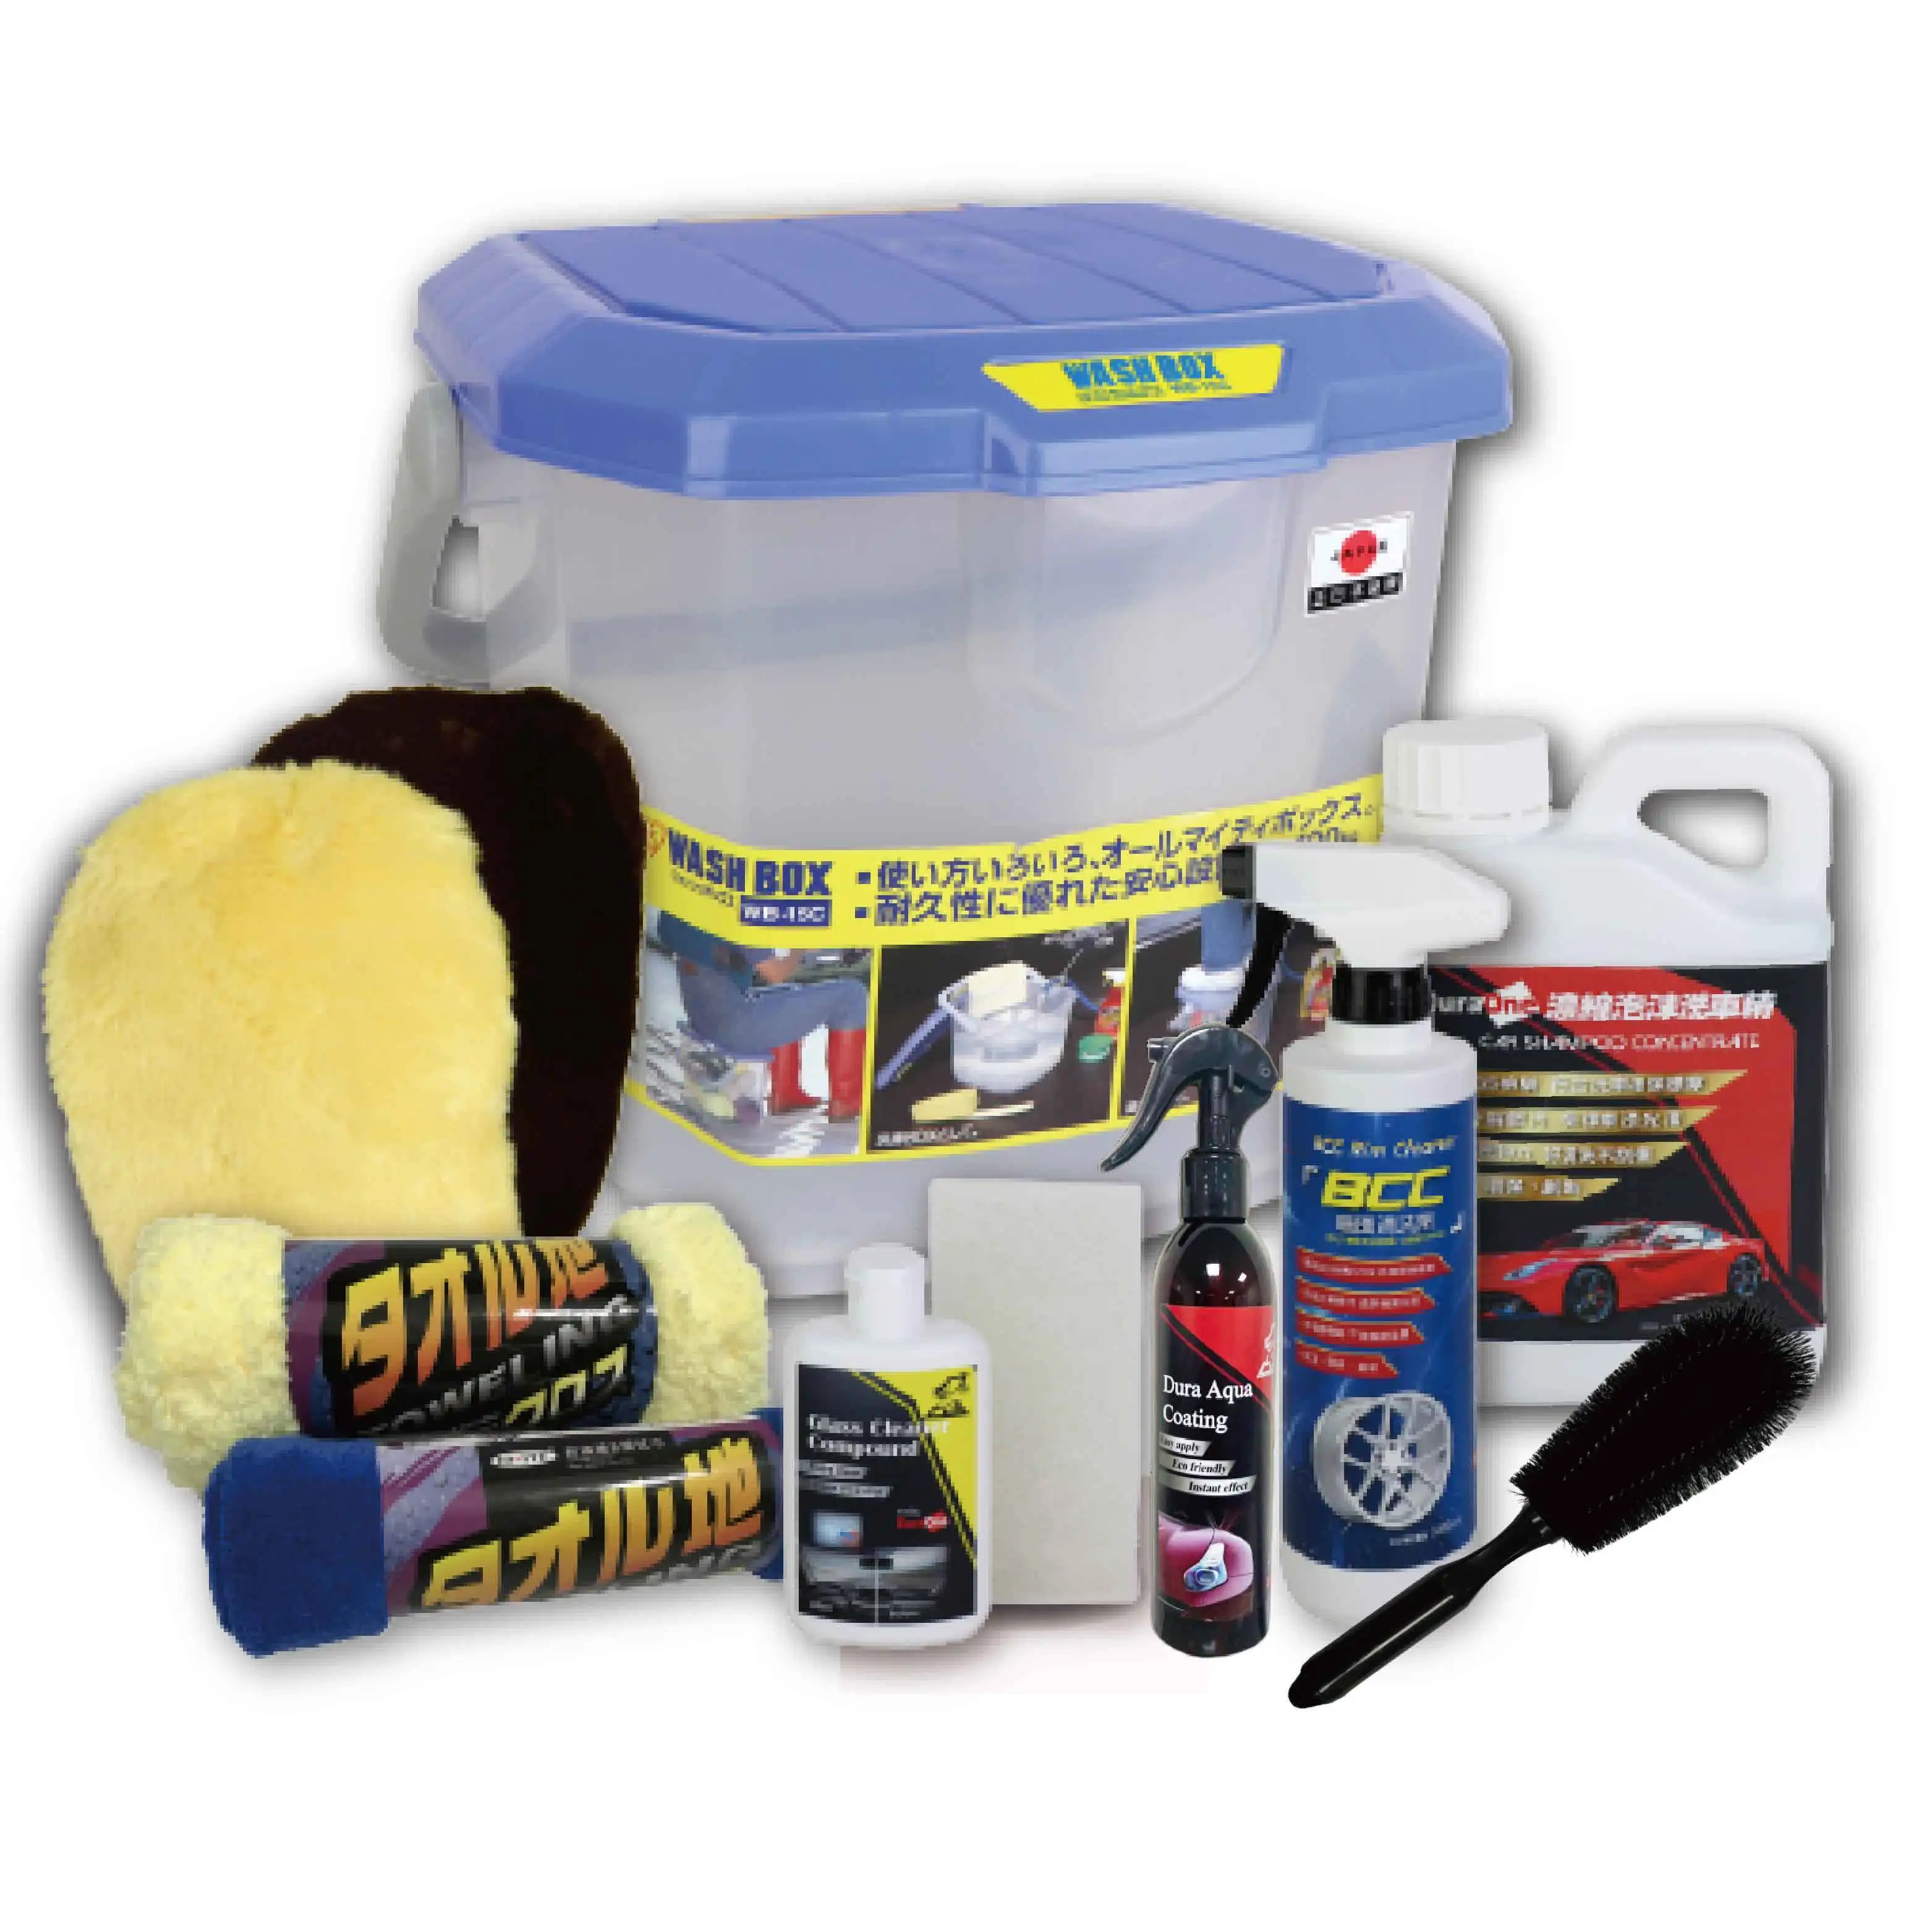 
Car Care Set Cleaning Washing Care Tool Kit Microfiber Car Wash Detailing Kit Car Cleaning Set  (1700000586053)